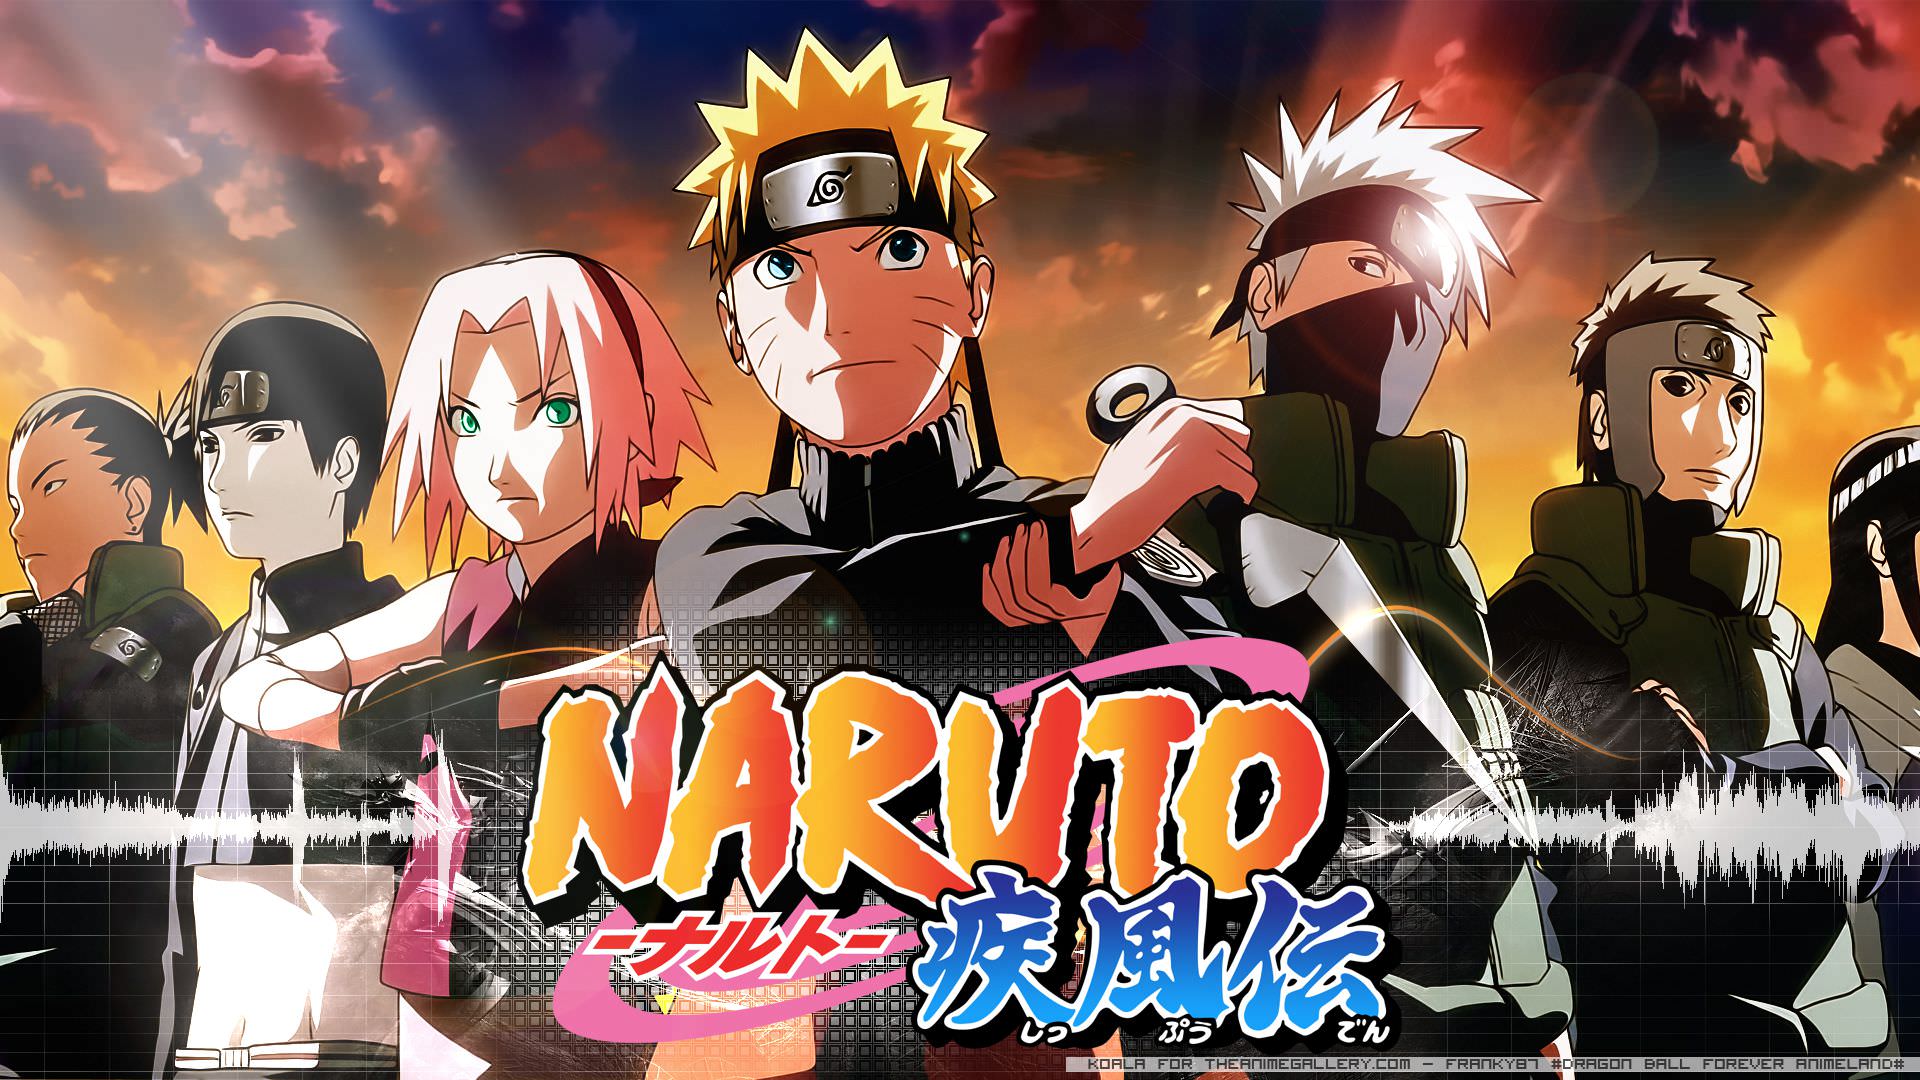 عقب افتادن زمان پخش قسمت‌های ویژه بیستمین سالگرد انیمه Naruto